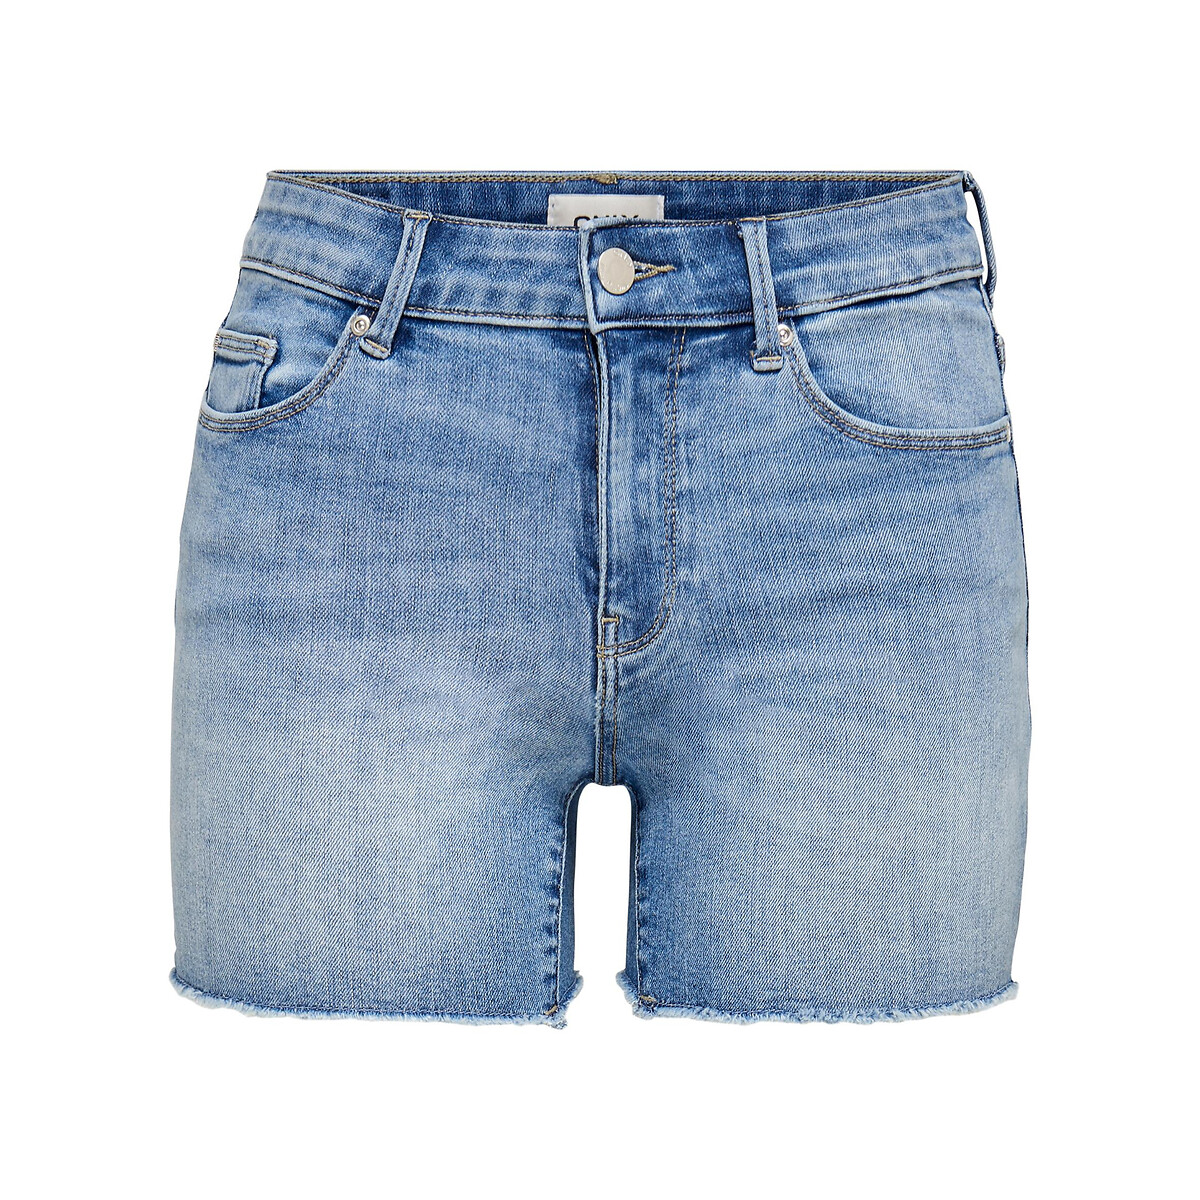 Шорты Из джинсовой ткани M синий LaRedoute, размер M - фото 4